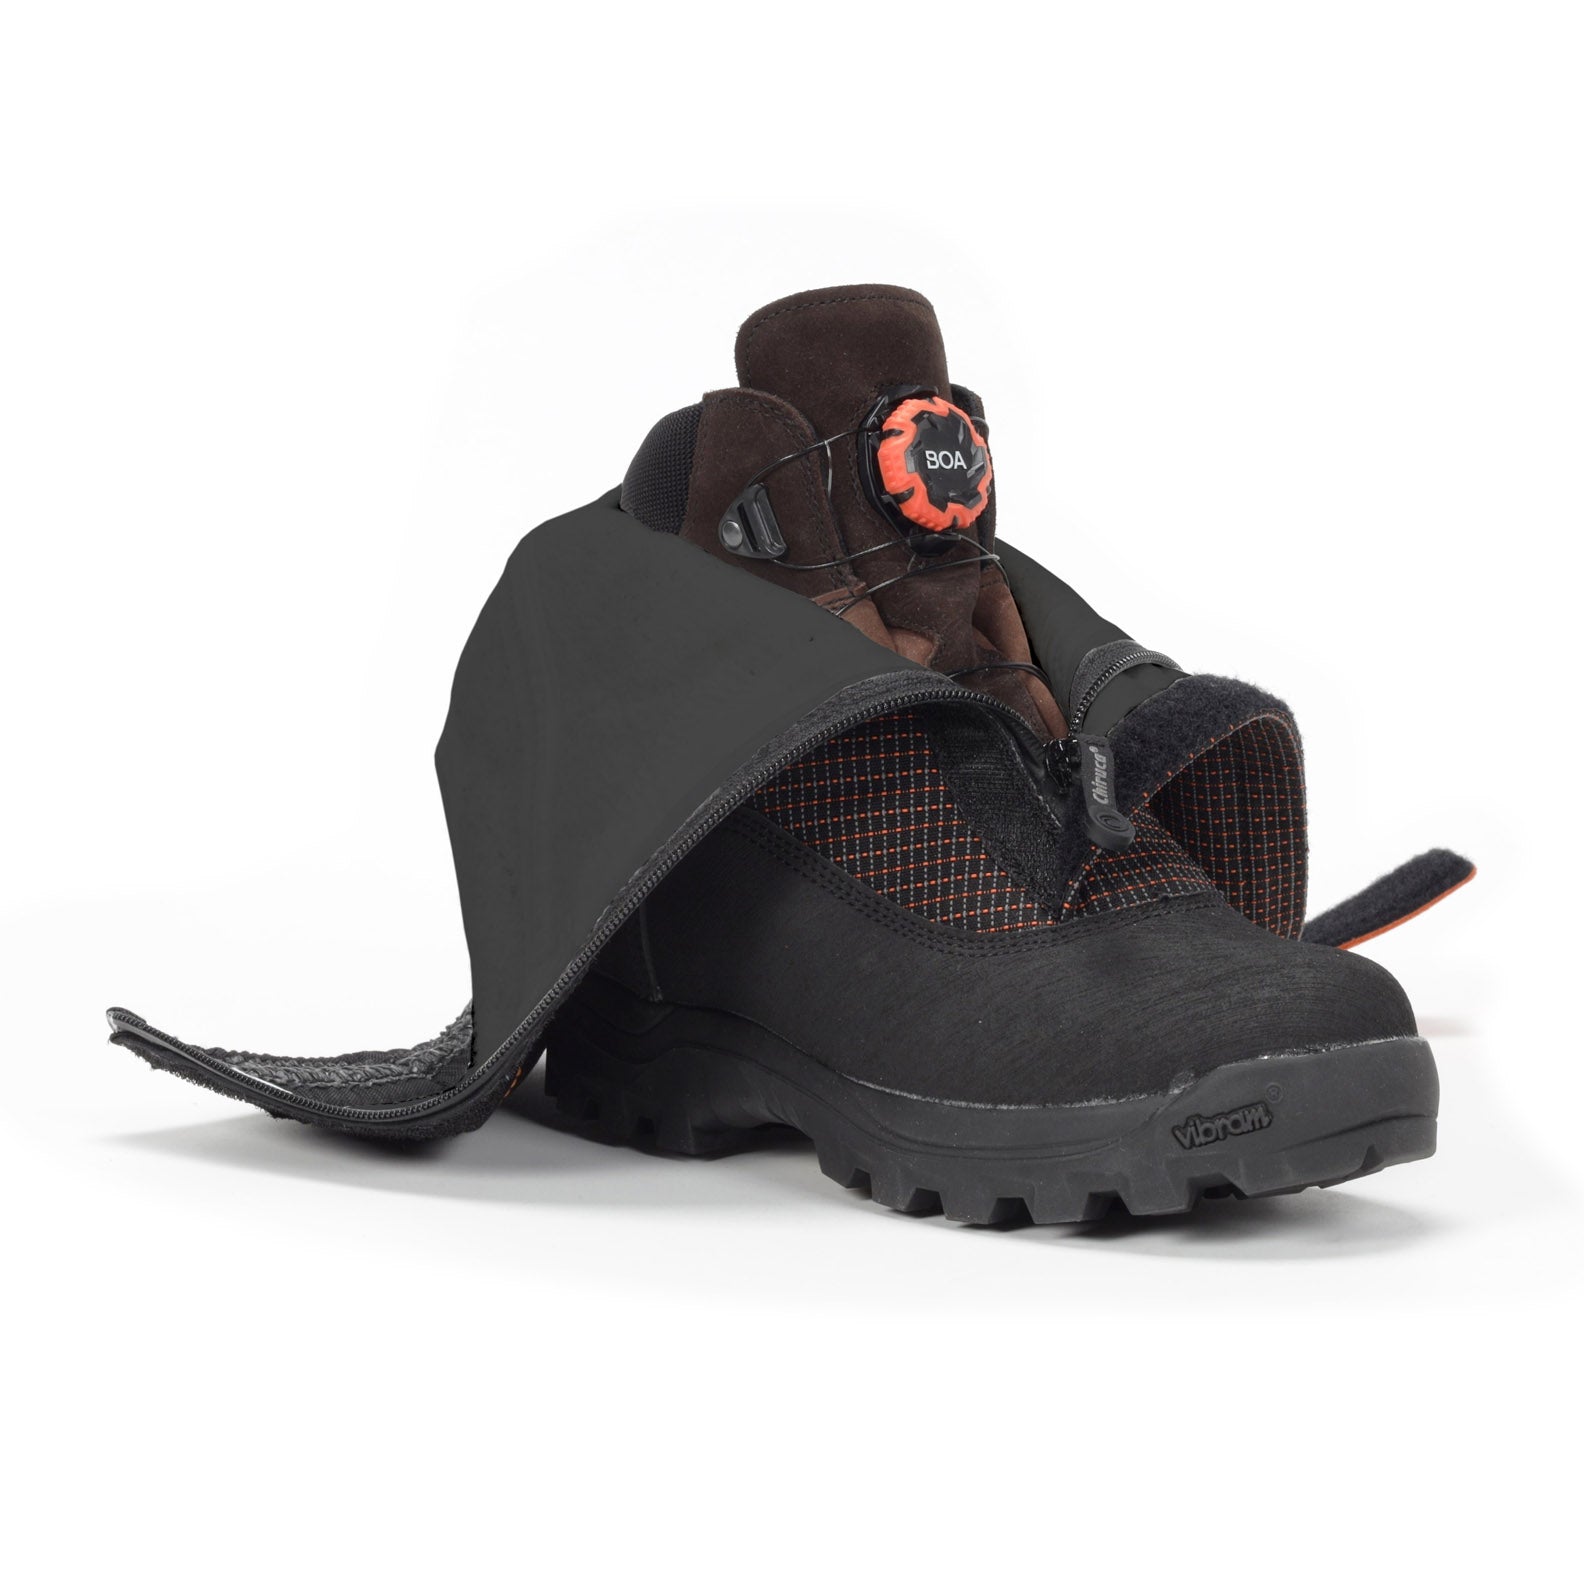 Chiruca Boots Boxer Boa 12 MEN GORE-TEX BOA closing system, Vibram sole,  Hunting